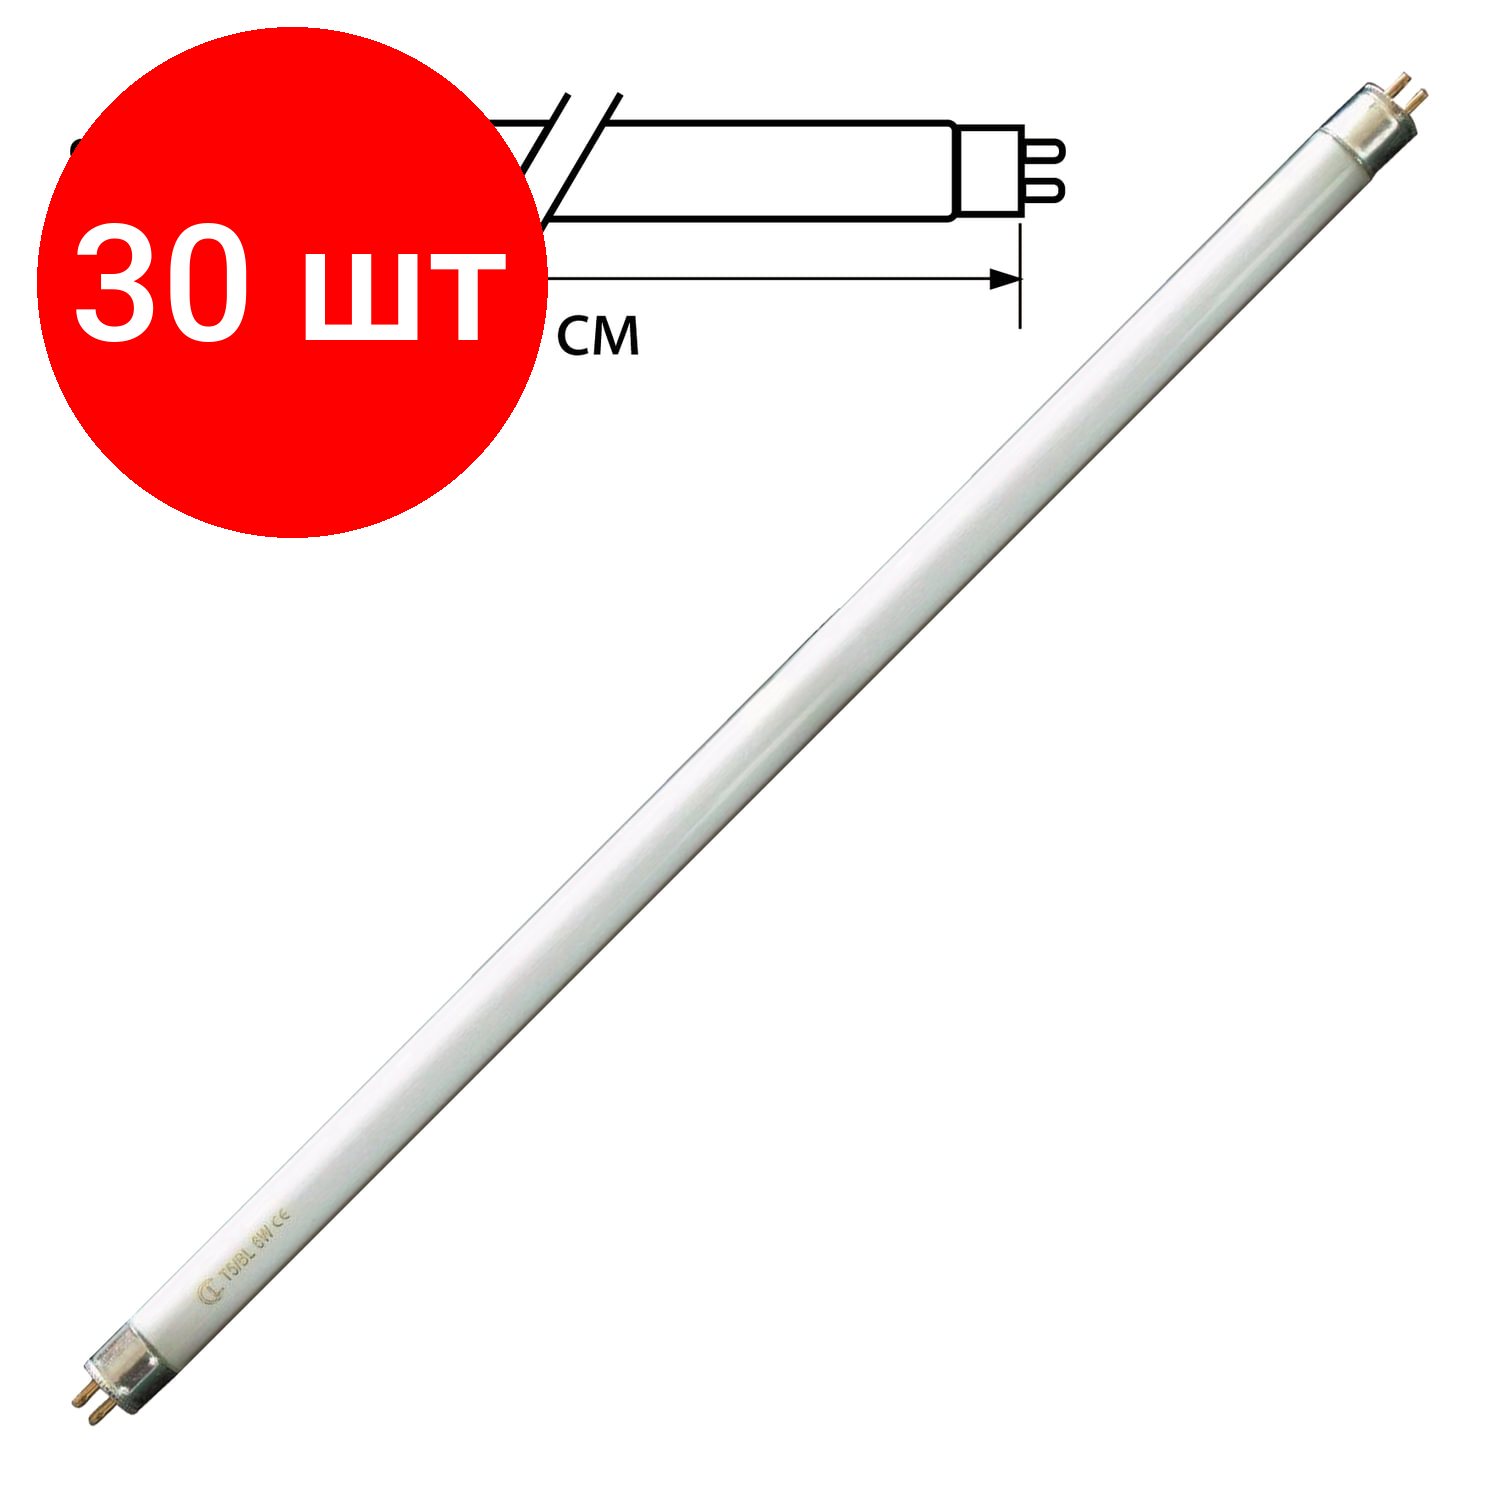 Комплект 30 шт, Лампа люминесцентная OSRAM L18/640, 18 Вт, цоколь G13, в виде трубки, длина 59 см, хол. белый свет